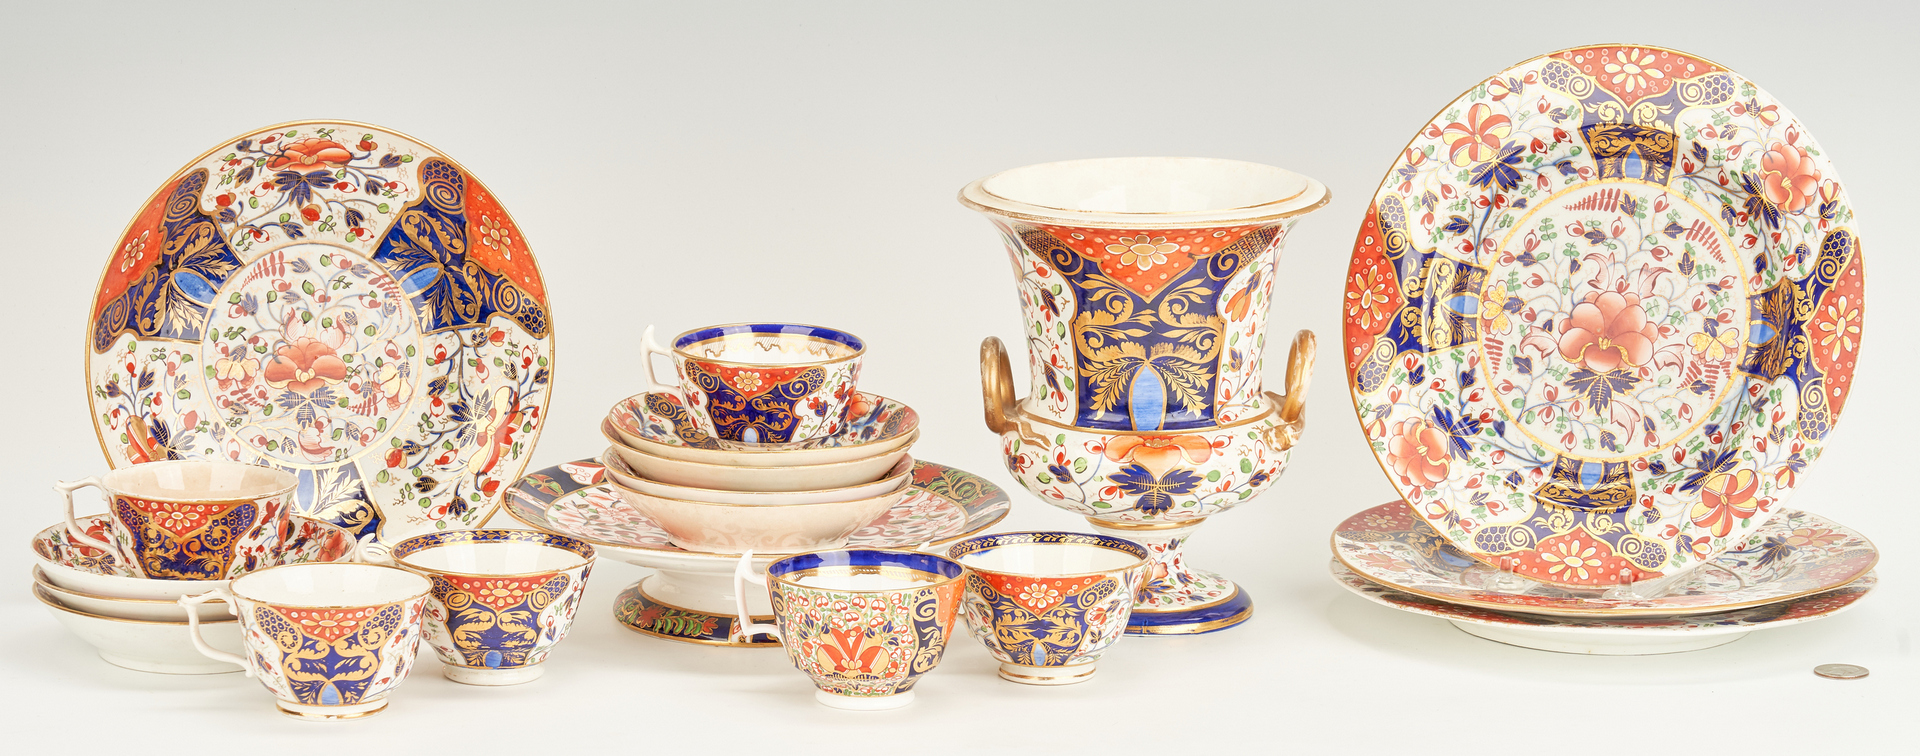 Lot 456: 19 Pcs. English Royal Crown Derby Porcelain